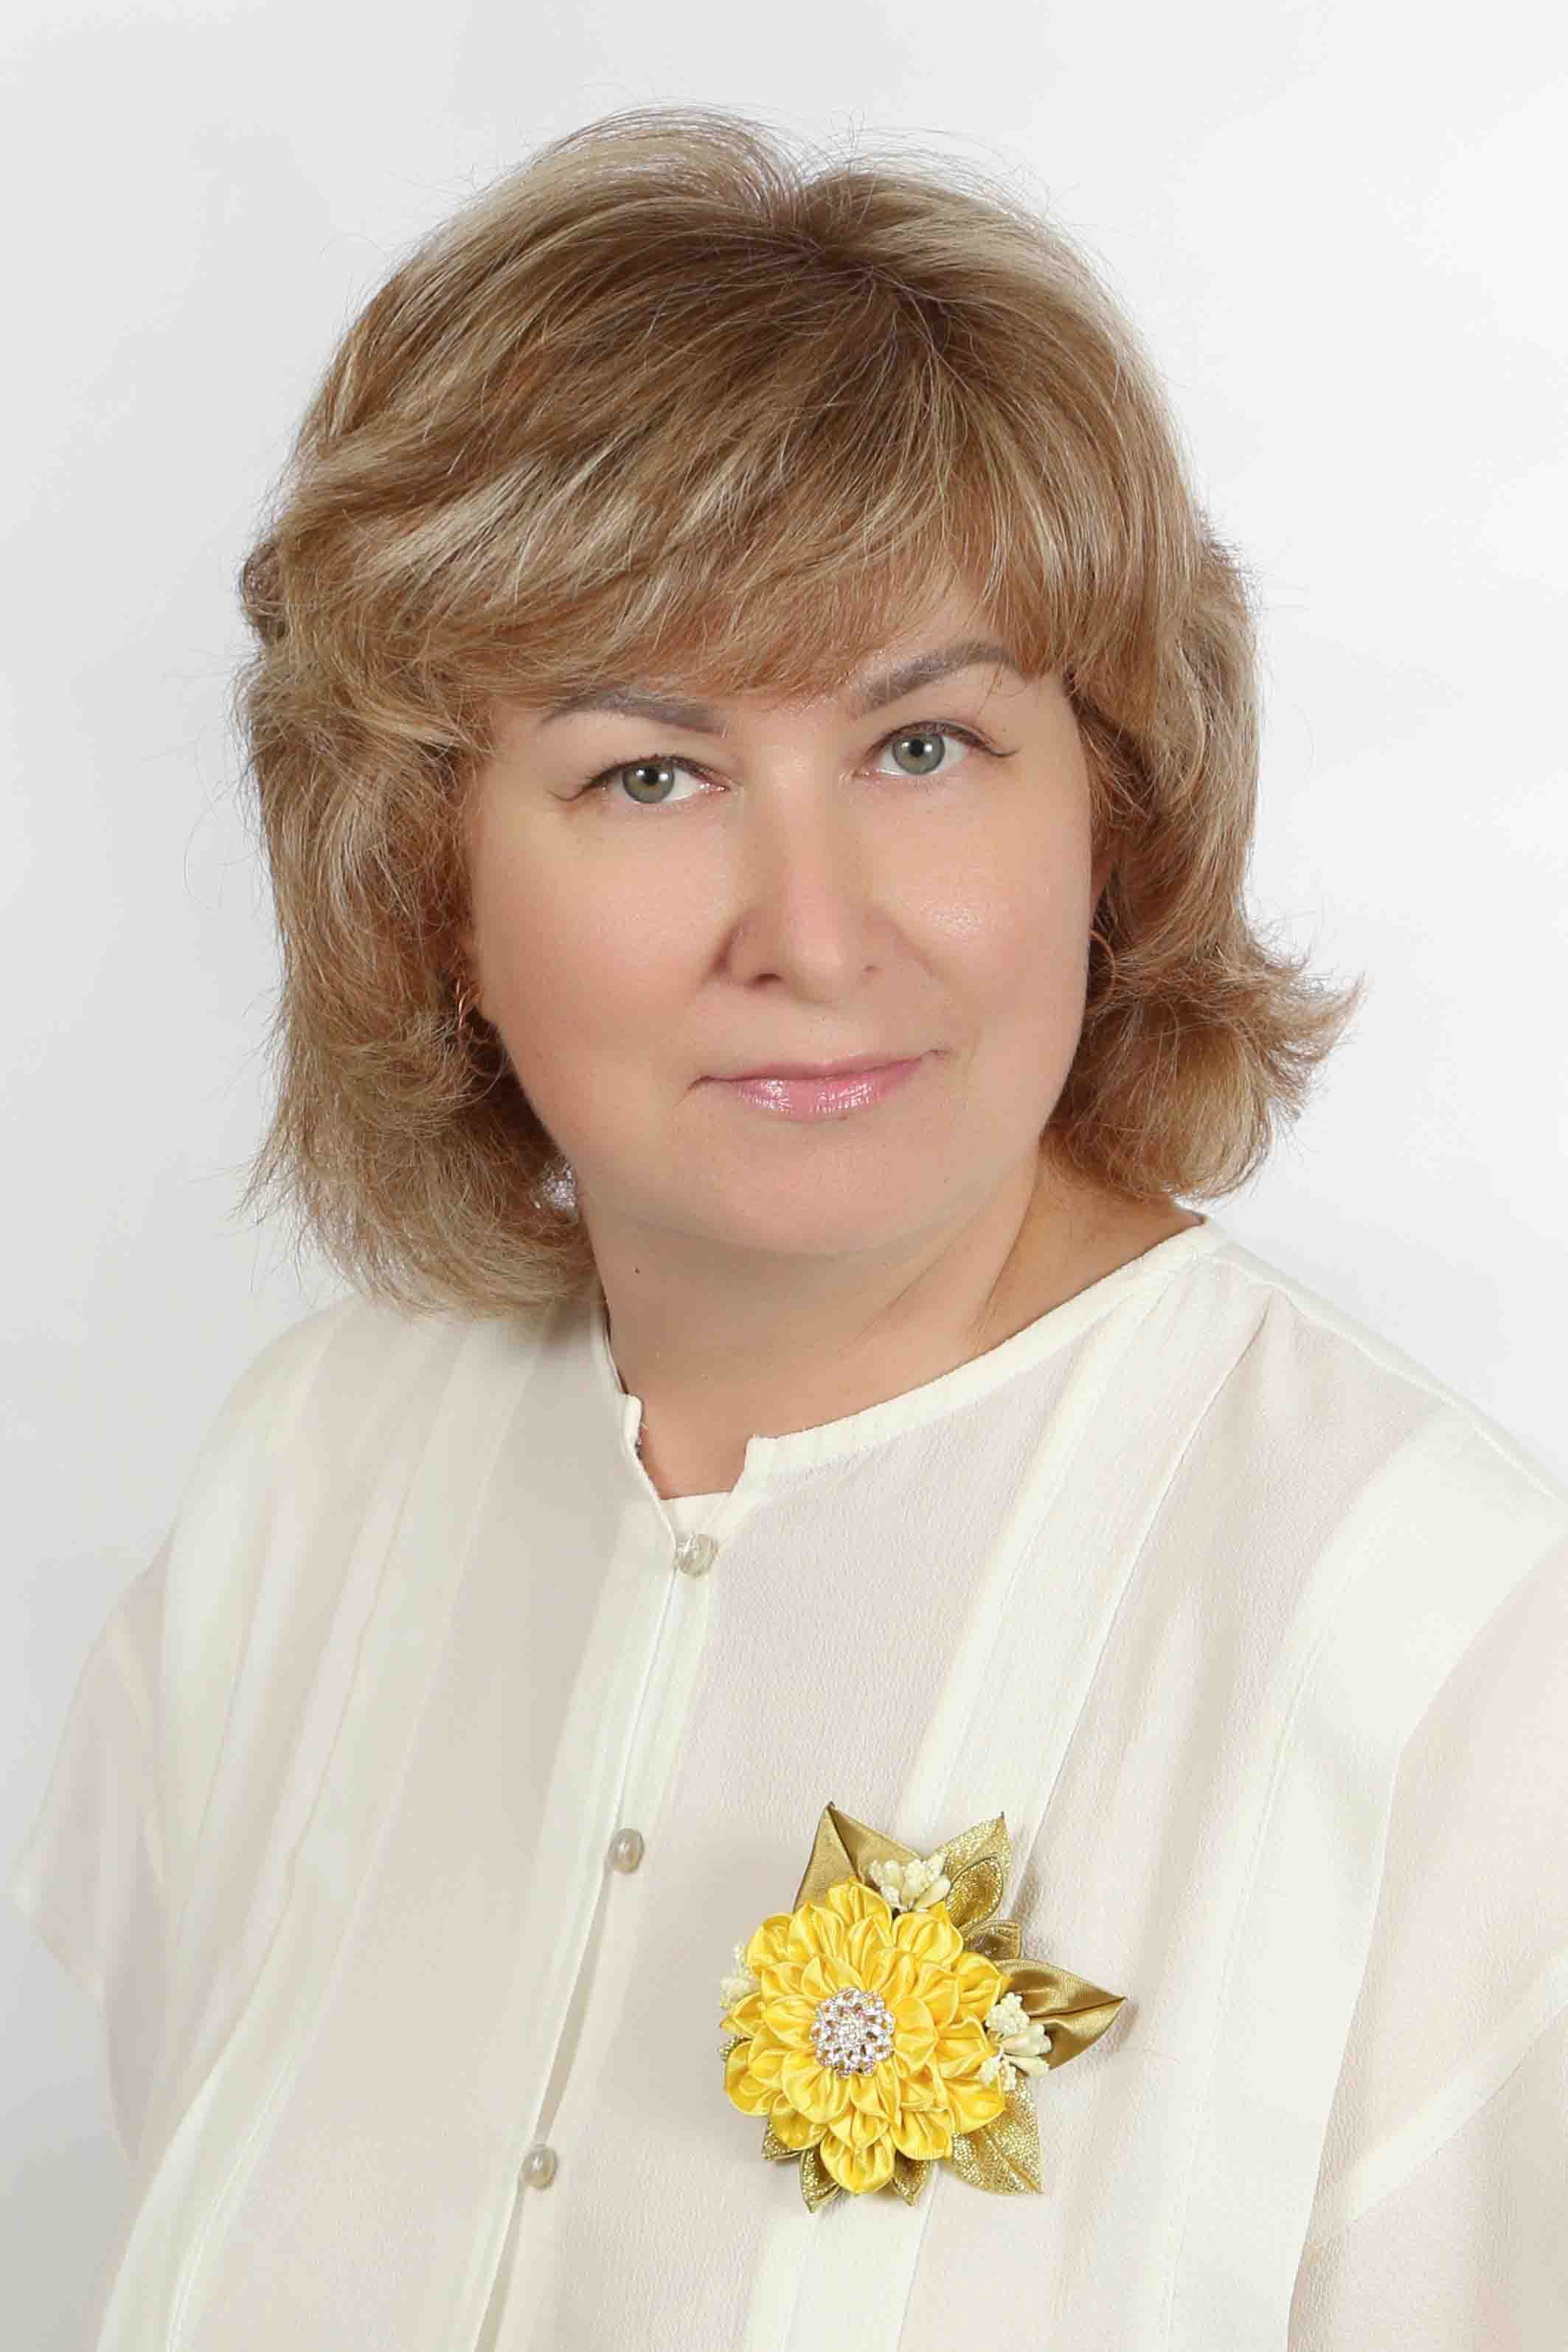 Слепцова Людмила Владимировна.